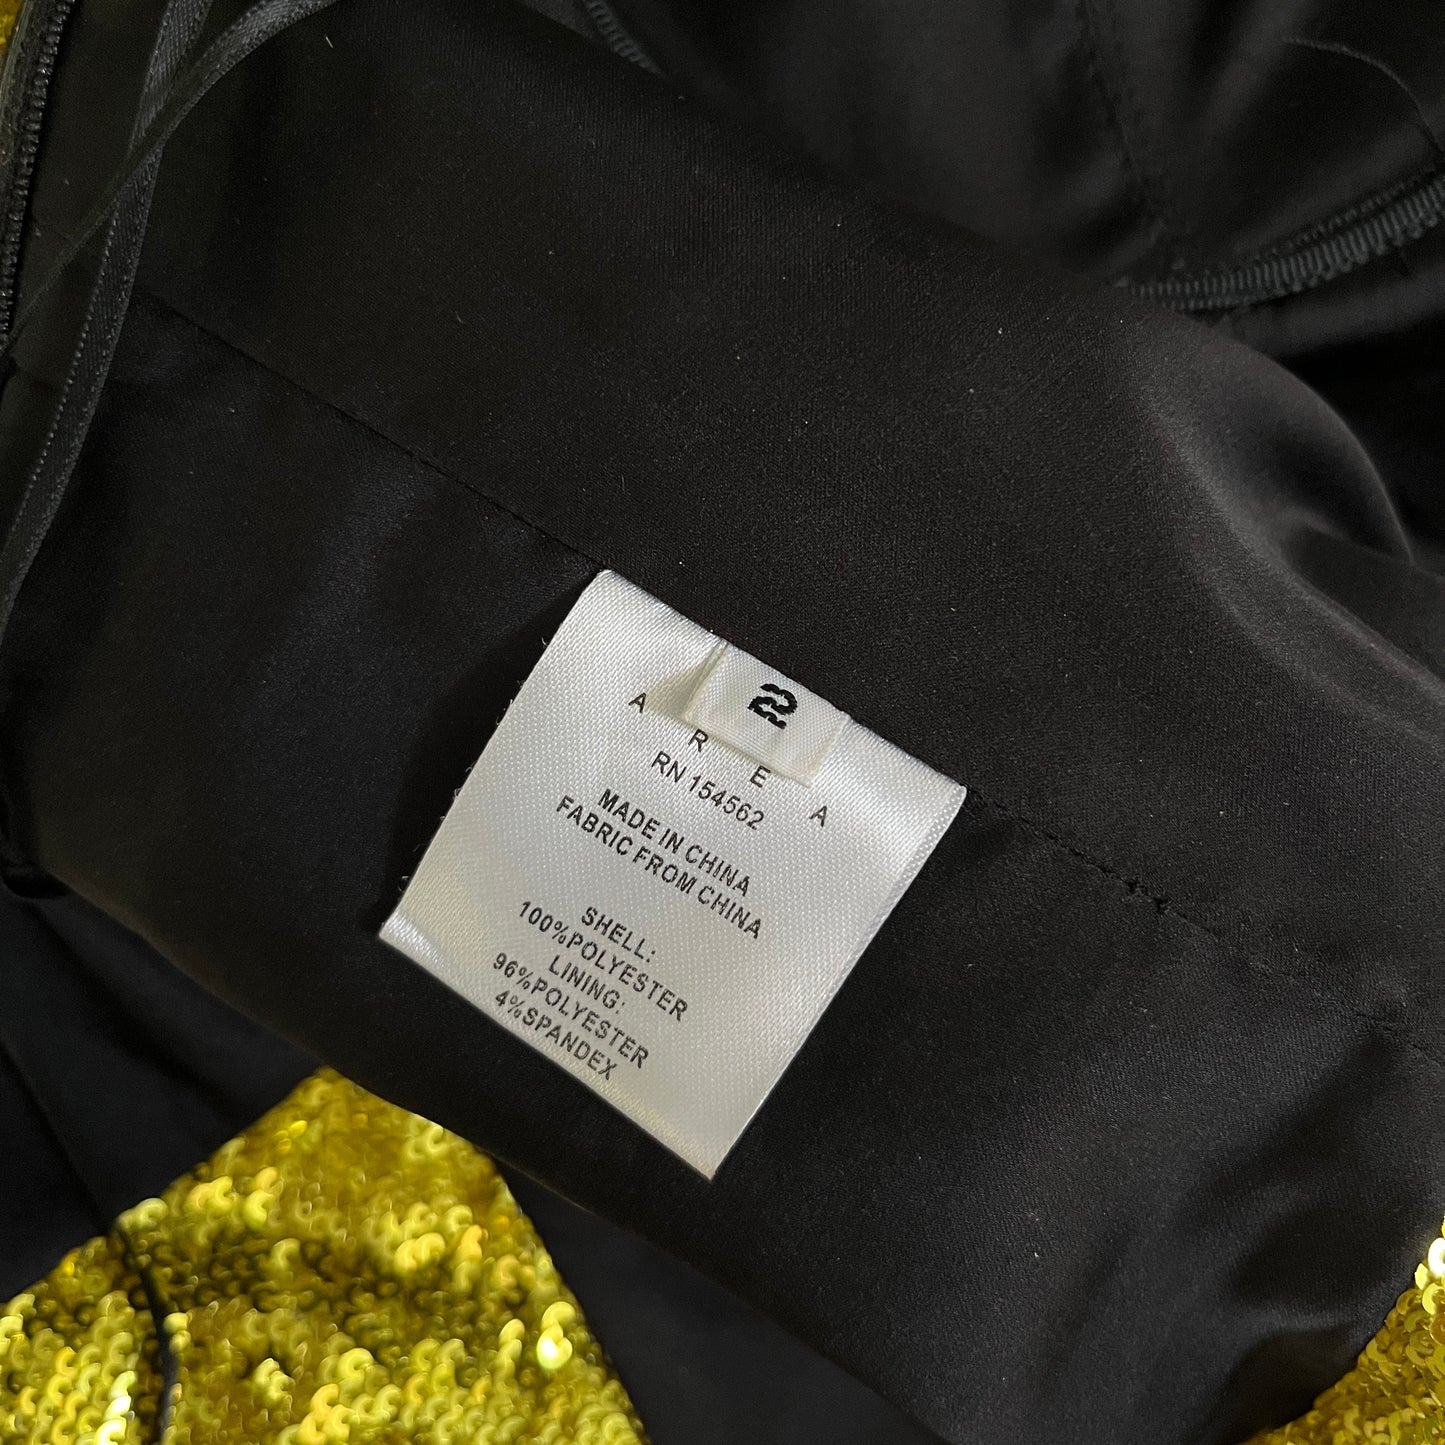 AREA Sequin Corset Top in Gold